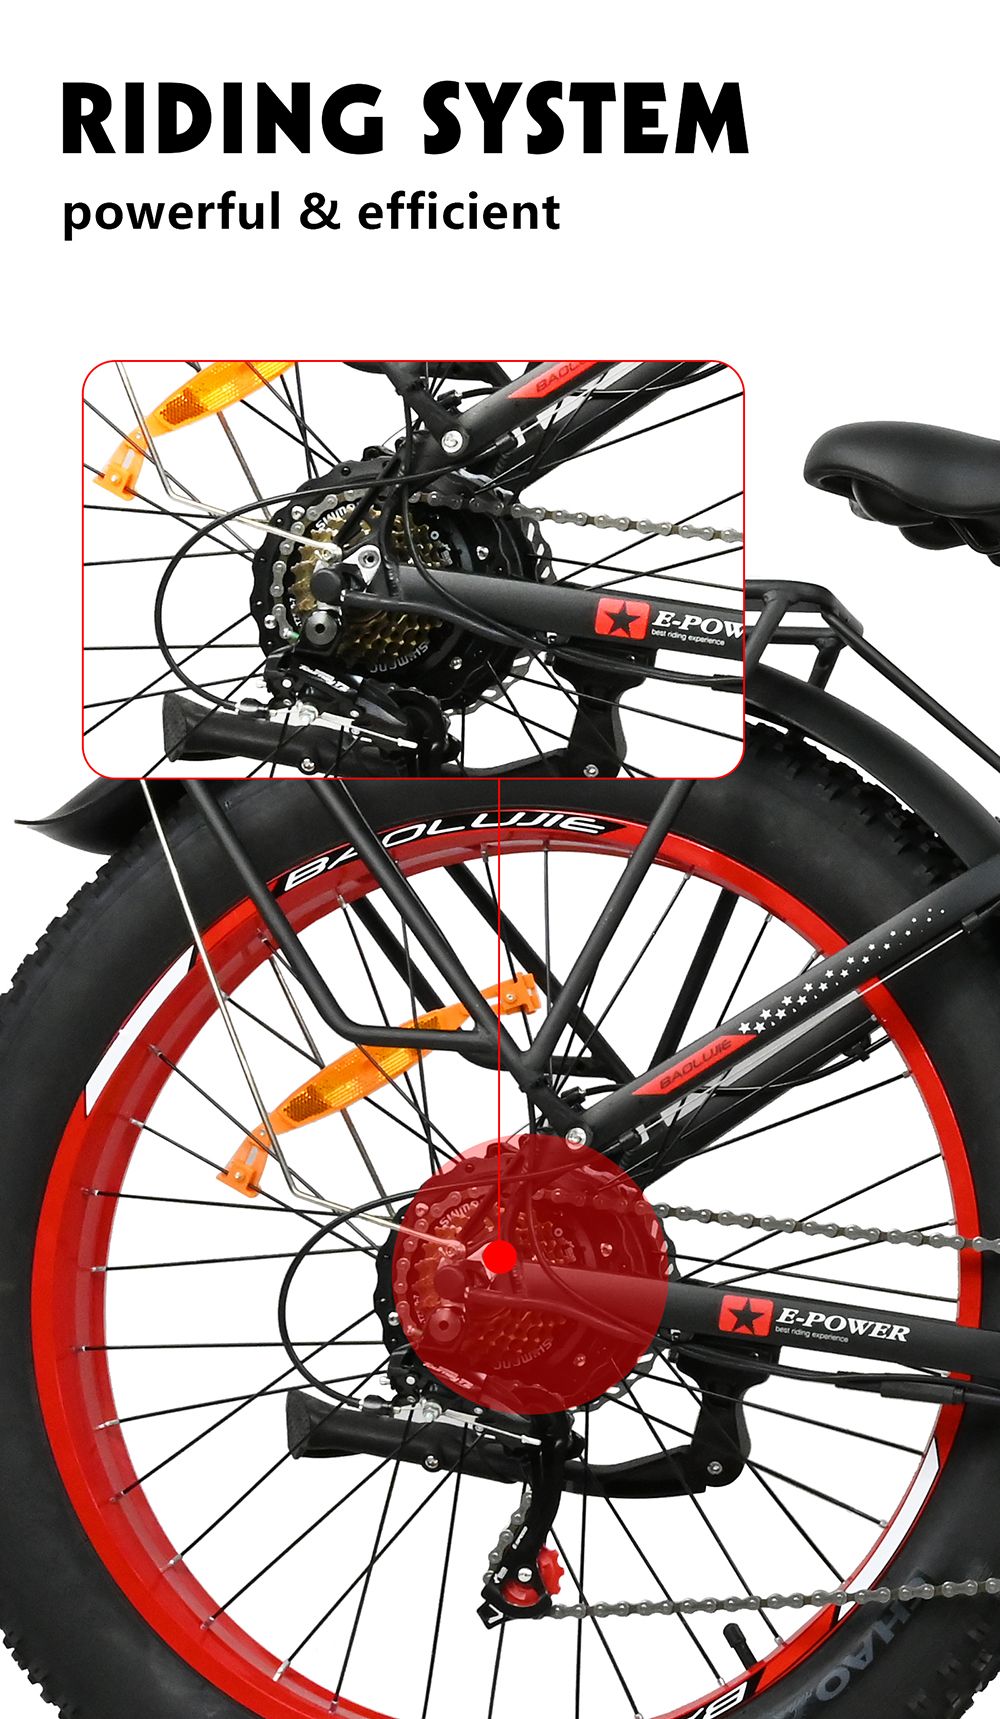 Vélo électrique BAOLUJIE DP2619, gros pneu 26 * 4.0 pouces, moteur 750 W, batterie 48 V 13 Ah, vitesse maximale 45 km/h, portée maximale 45 km, écran LCD SHIMANO à 7 vitesses - Noir